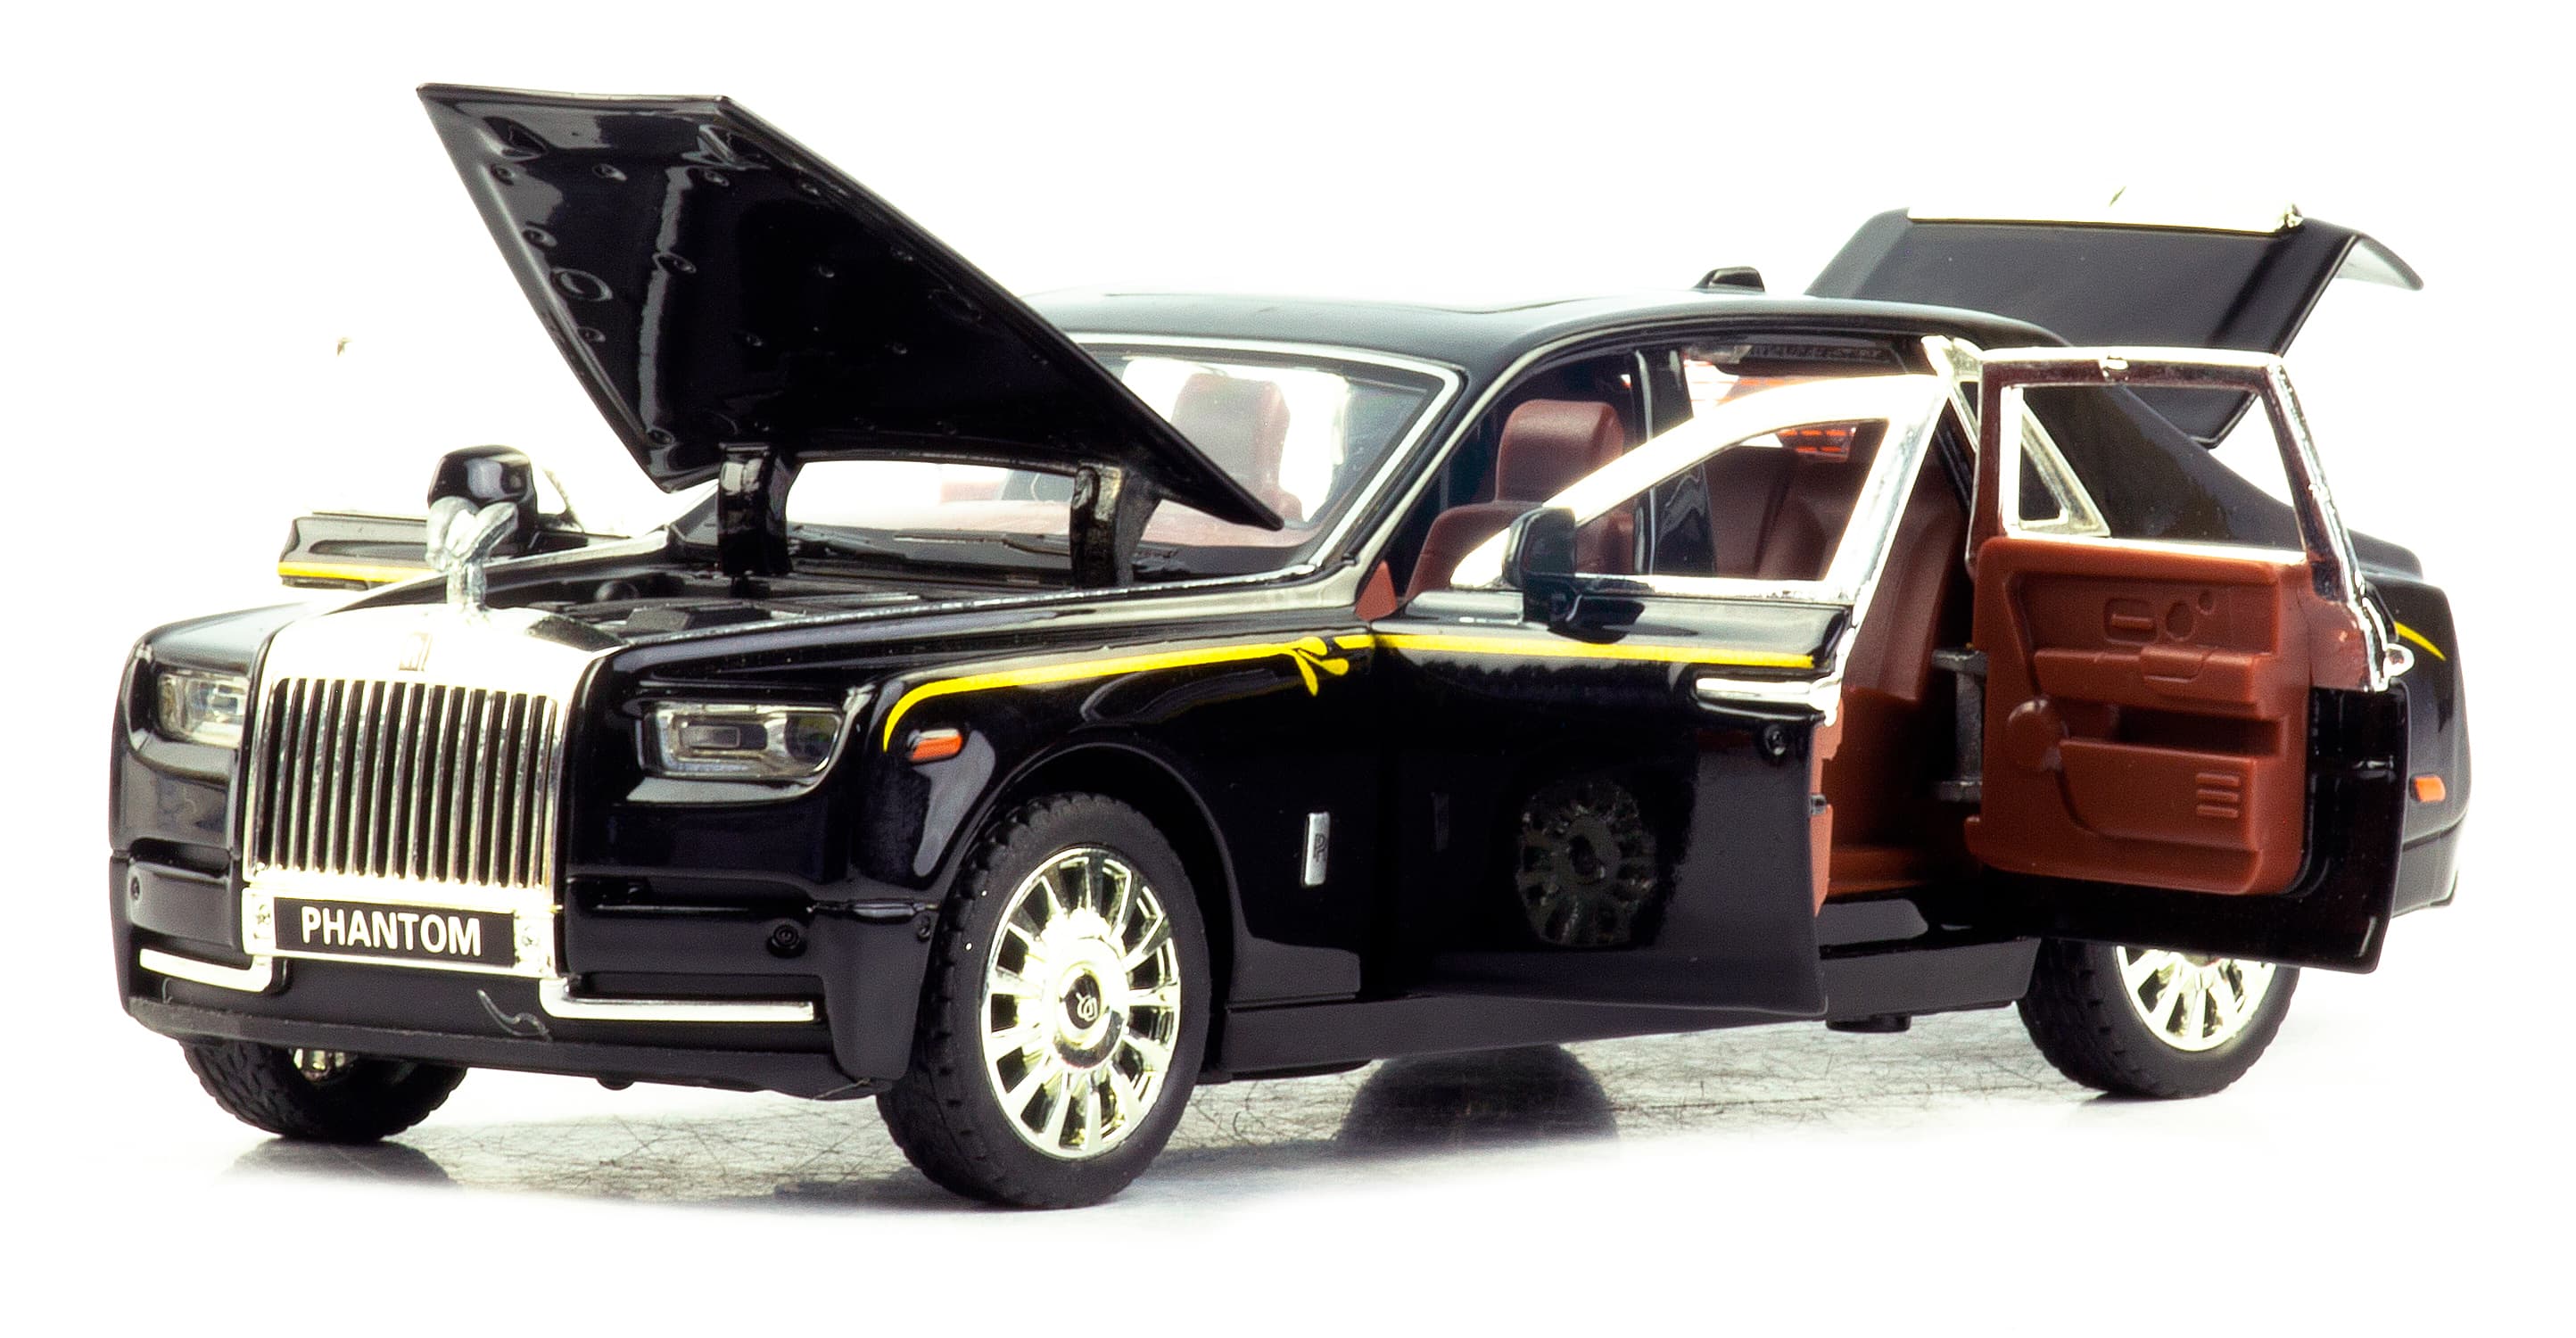 Металлическая машинка Newao Model 1:32 «Rolls-Royce Phantom» XA3229B, 17 см., инерционная, свет, звук / Микс